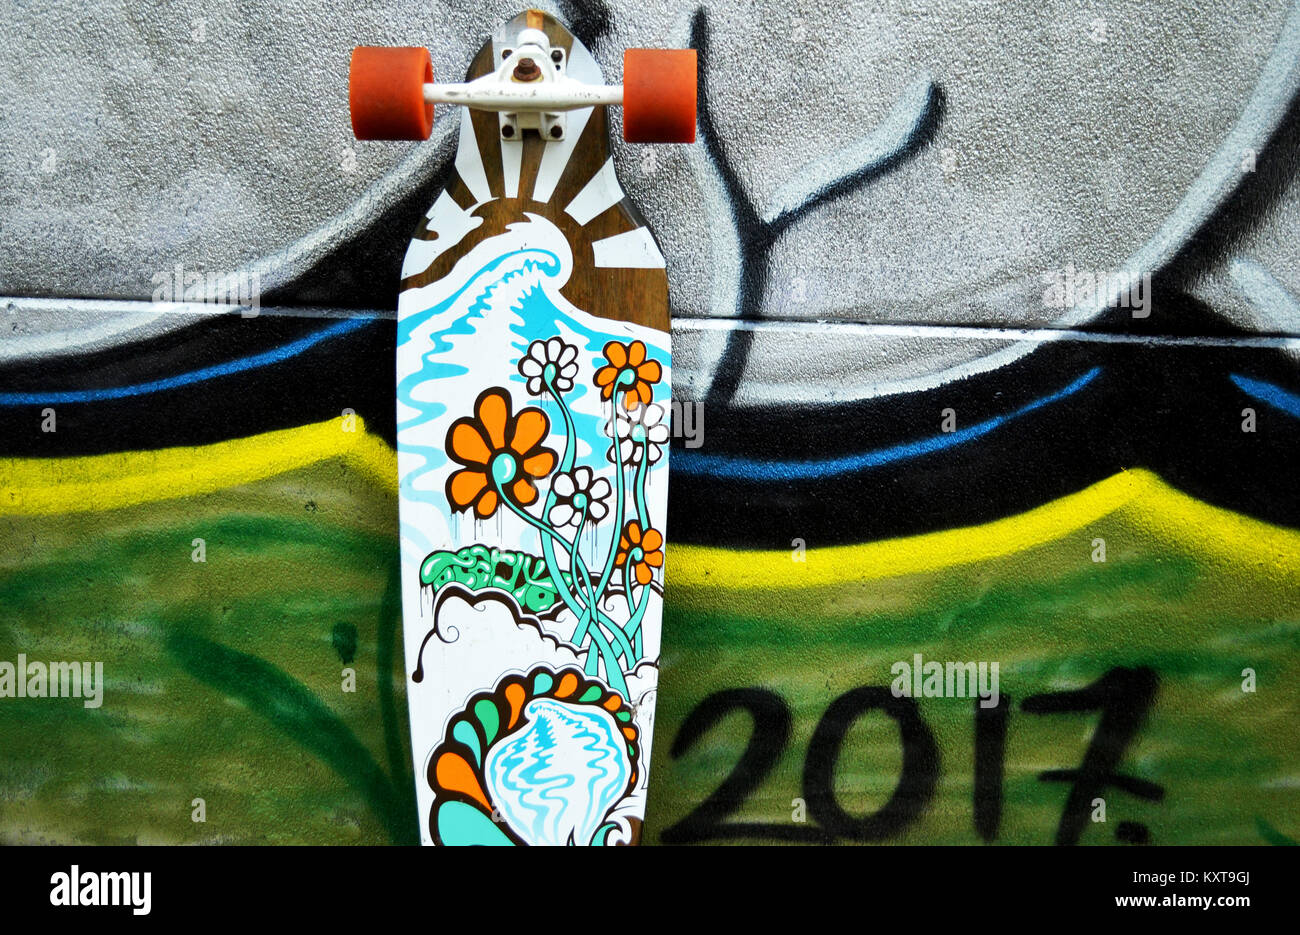 Longskate skateboard leaning against wall avec graffiti Banque D'Images